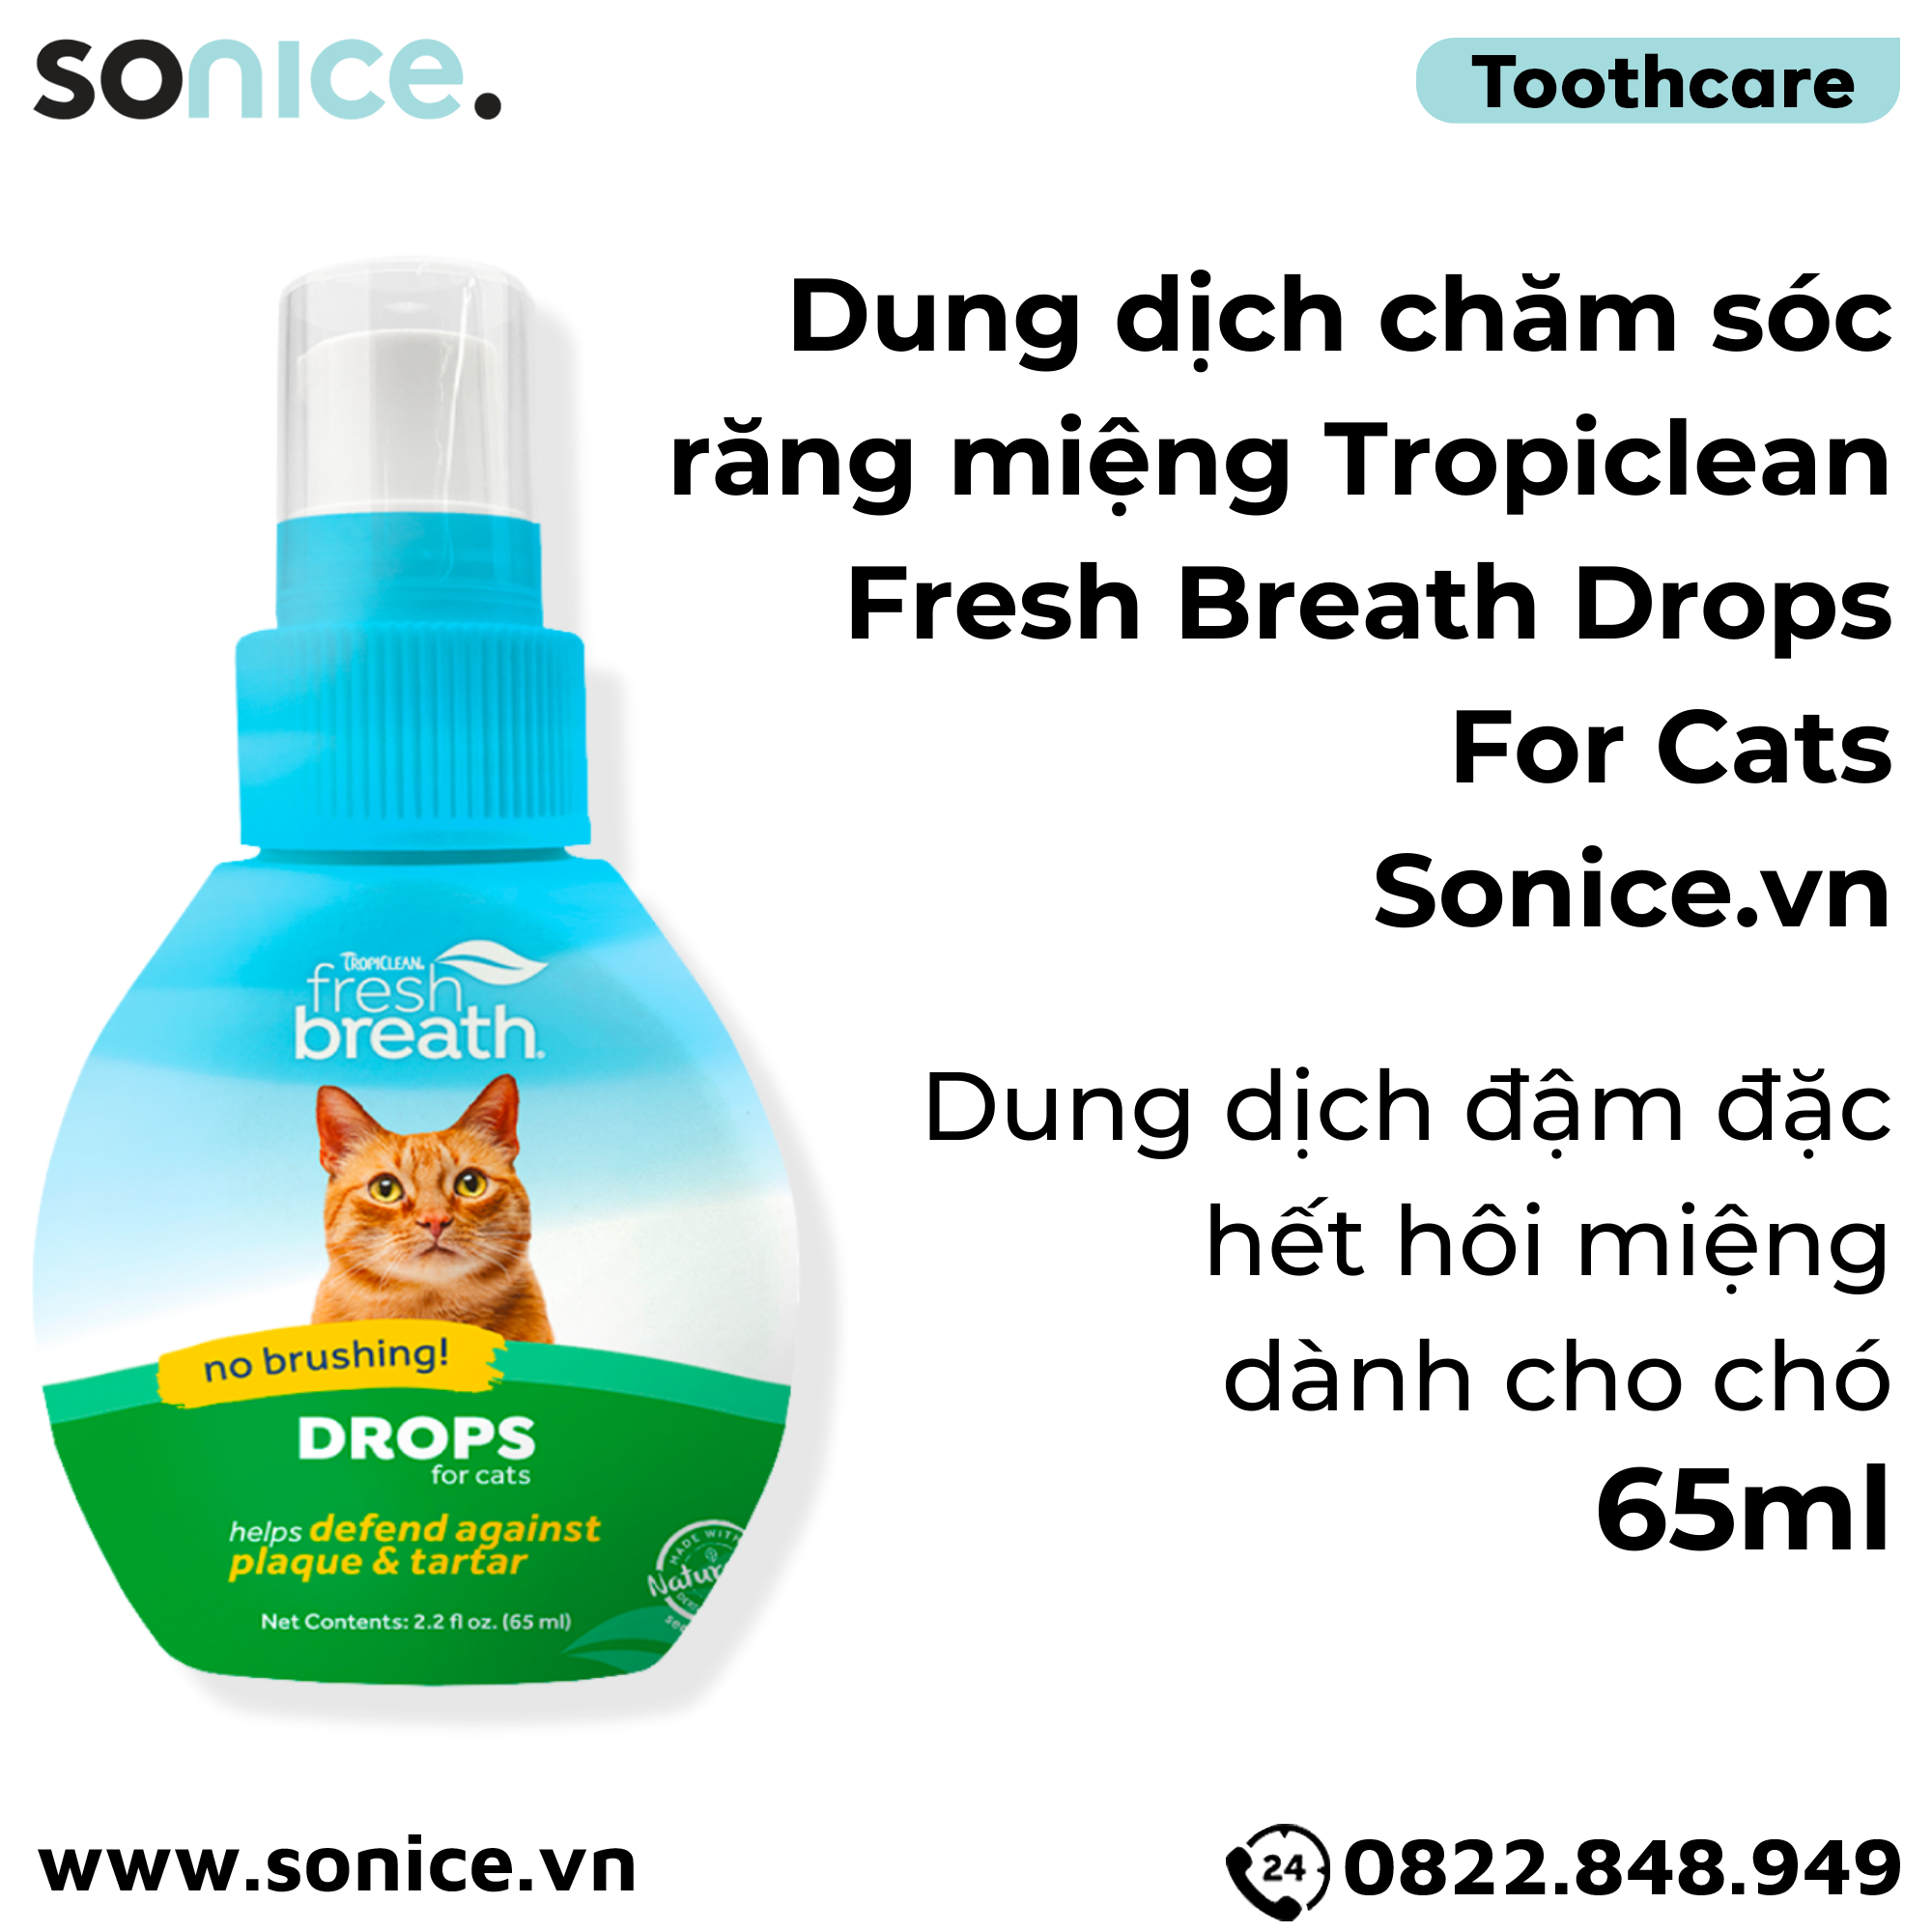  TropiClean FRESH BREATH Drops Cats 65ml - Hết hôi miệng đậm đặc cho mèo SONICE. 